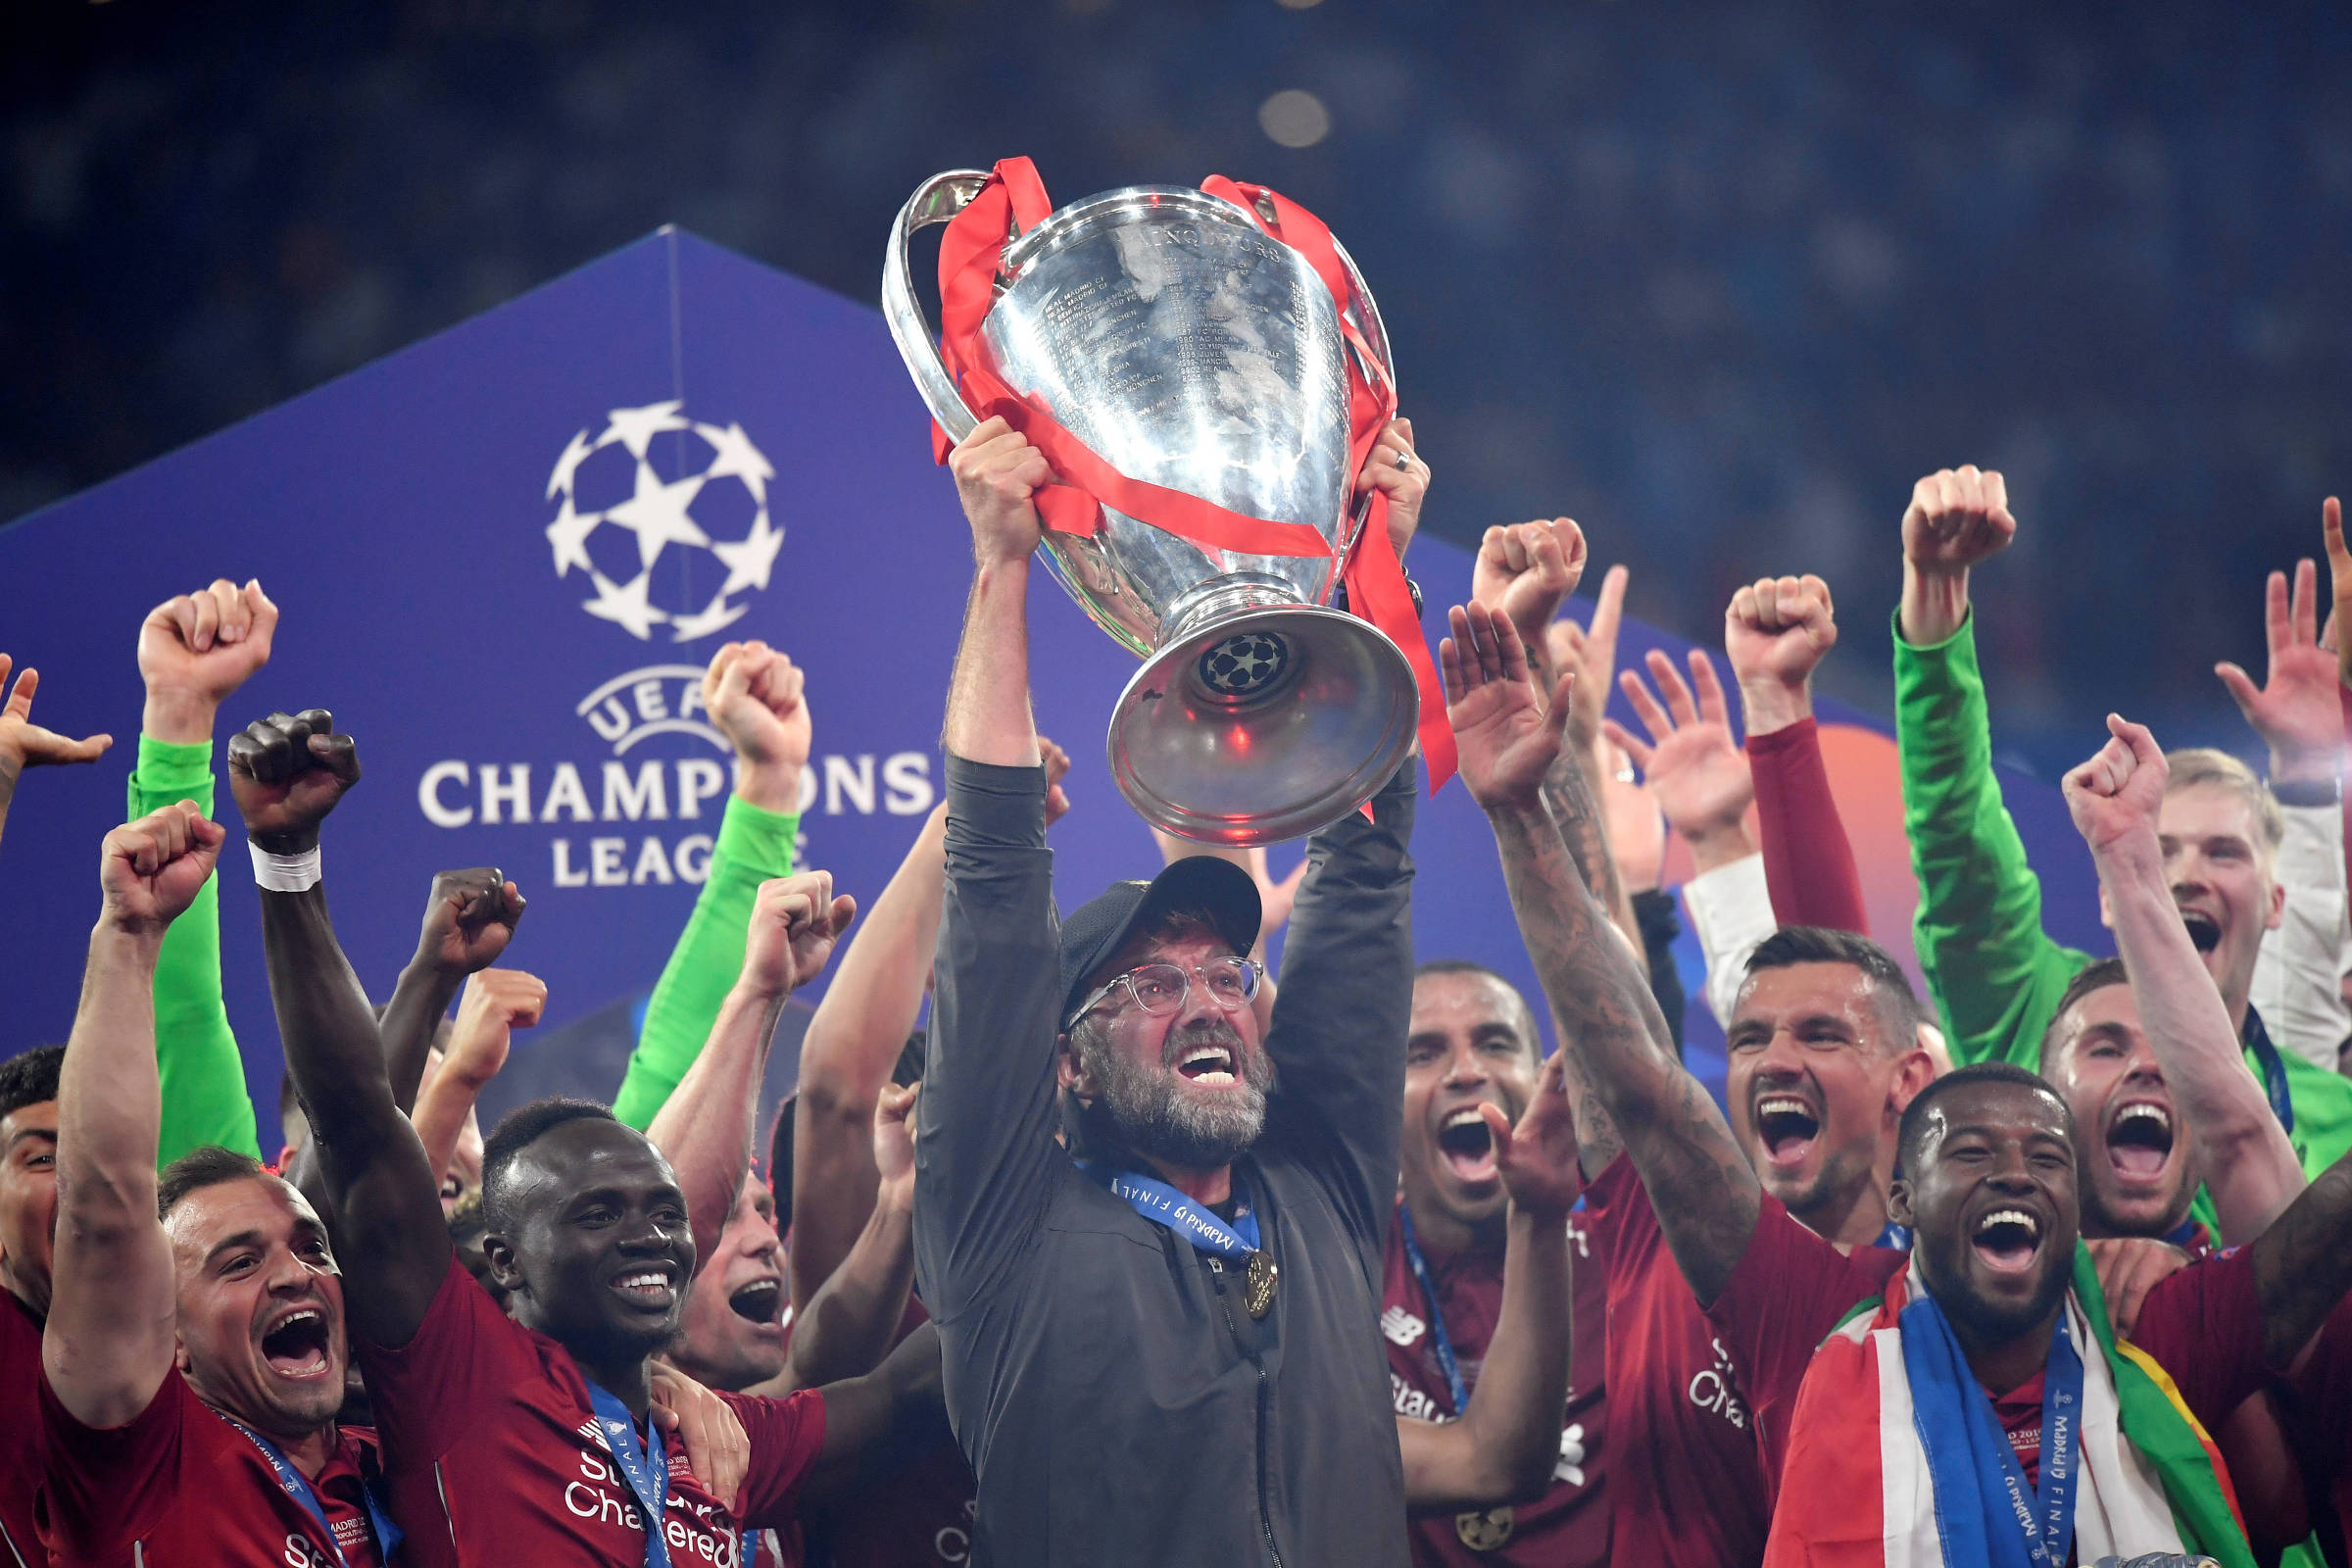 Os 5 eventos mais cool para ver a final da Champions League em SP